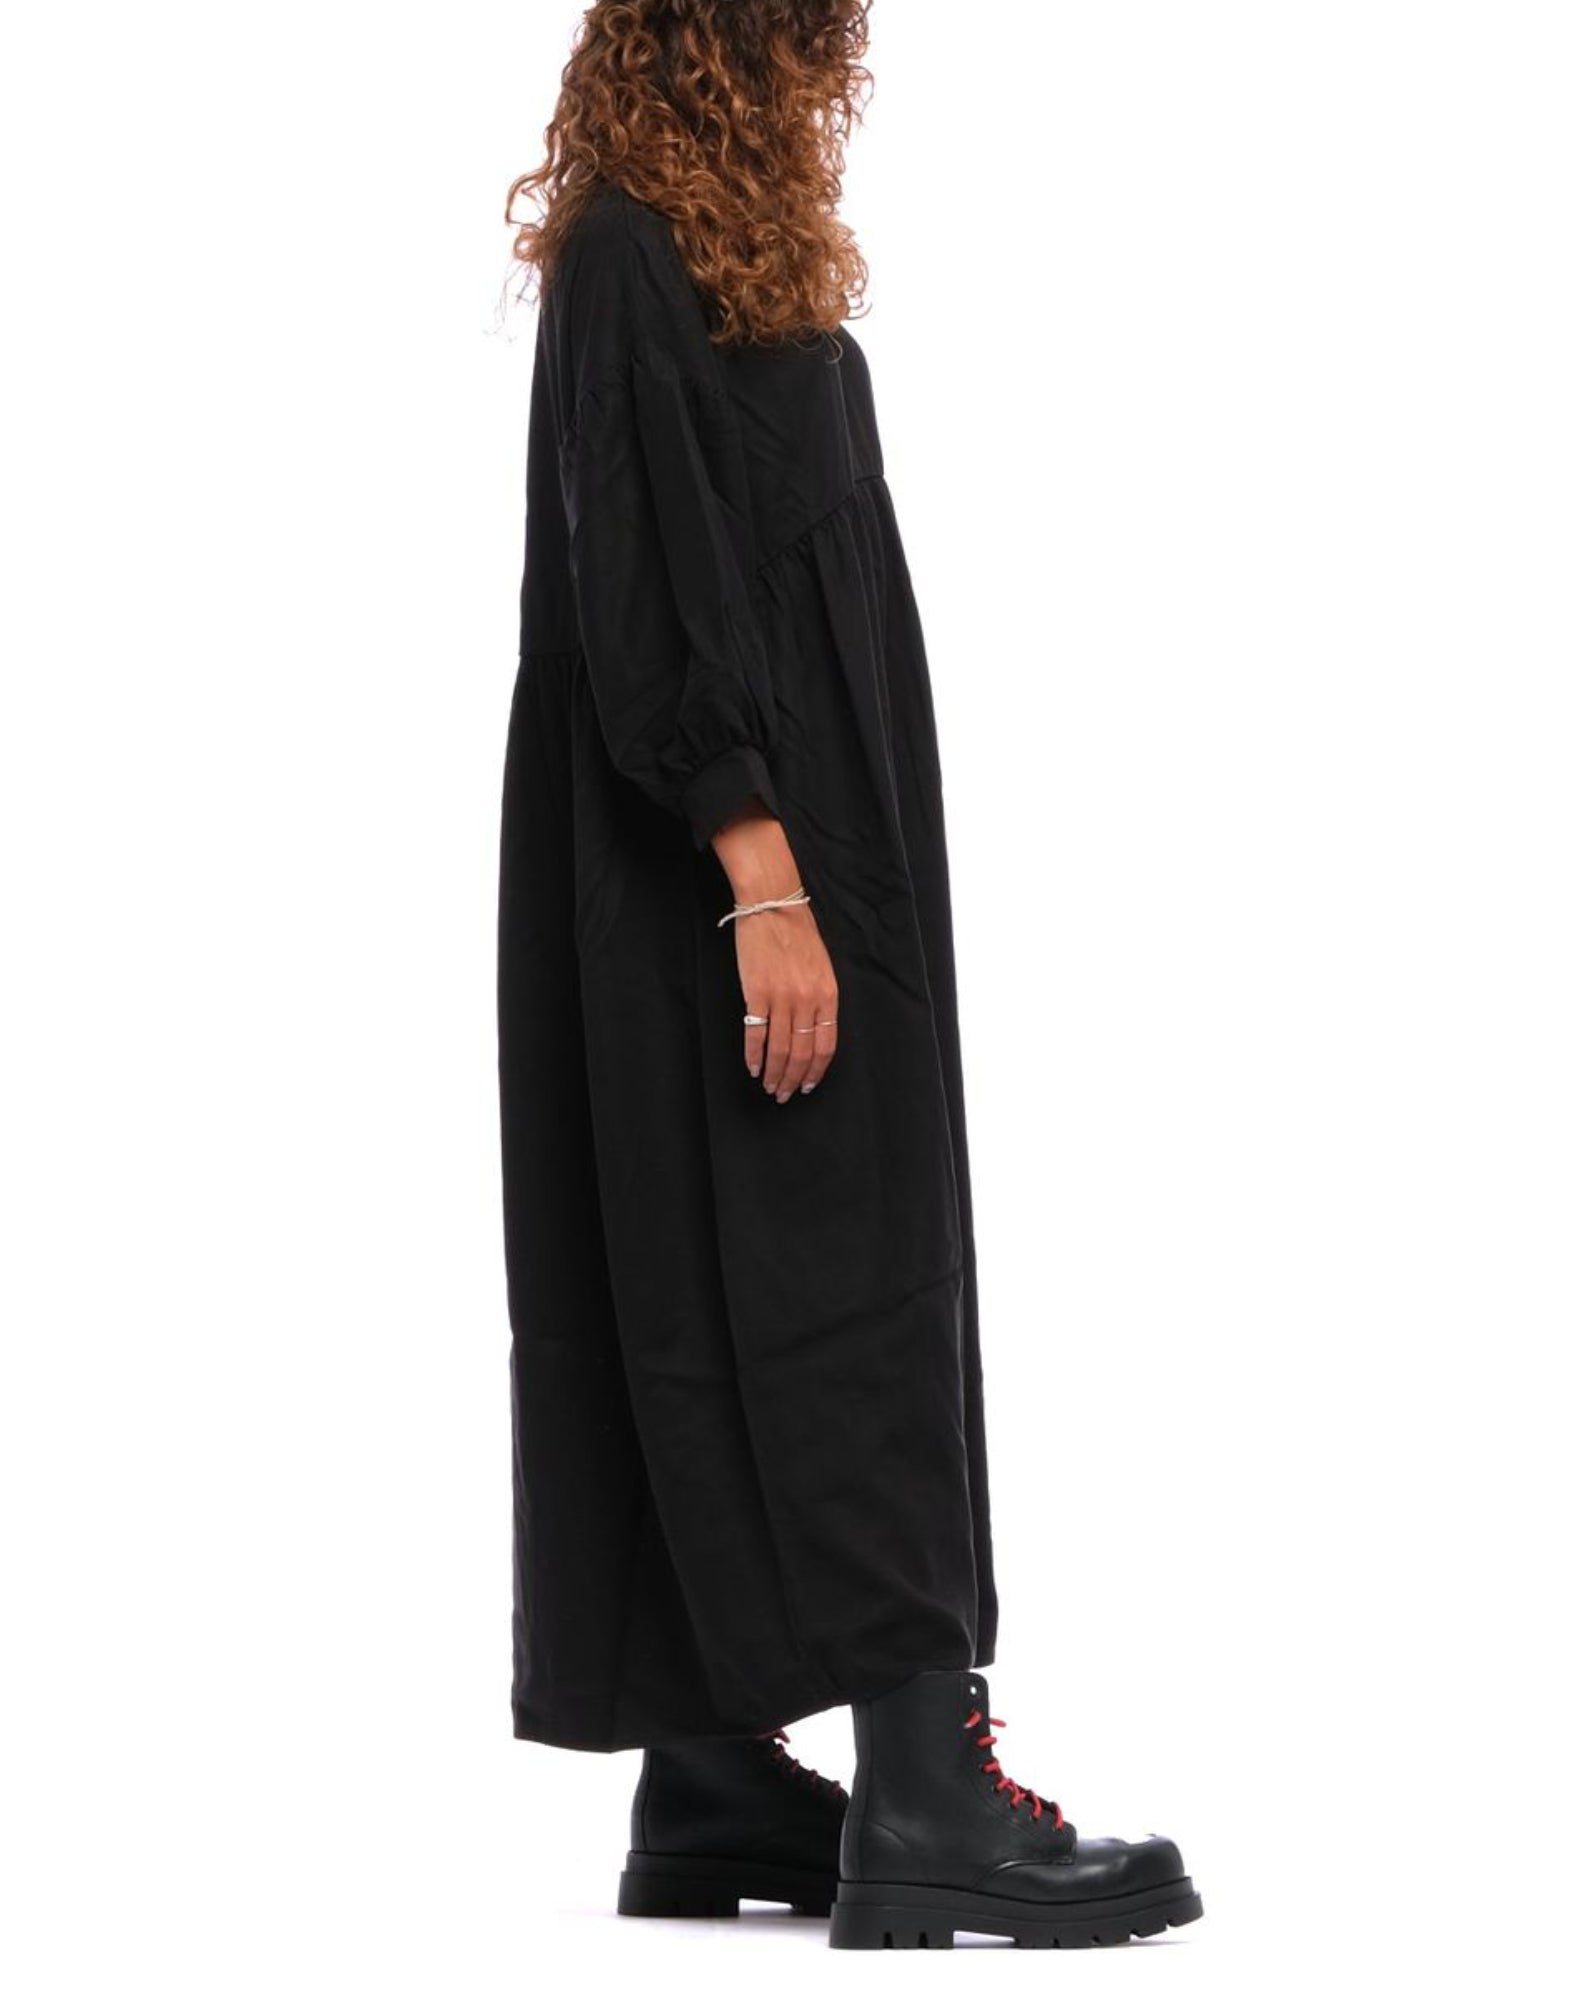 Kleid für Frauen RITA ROW 1887 ve schwarz